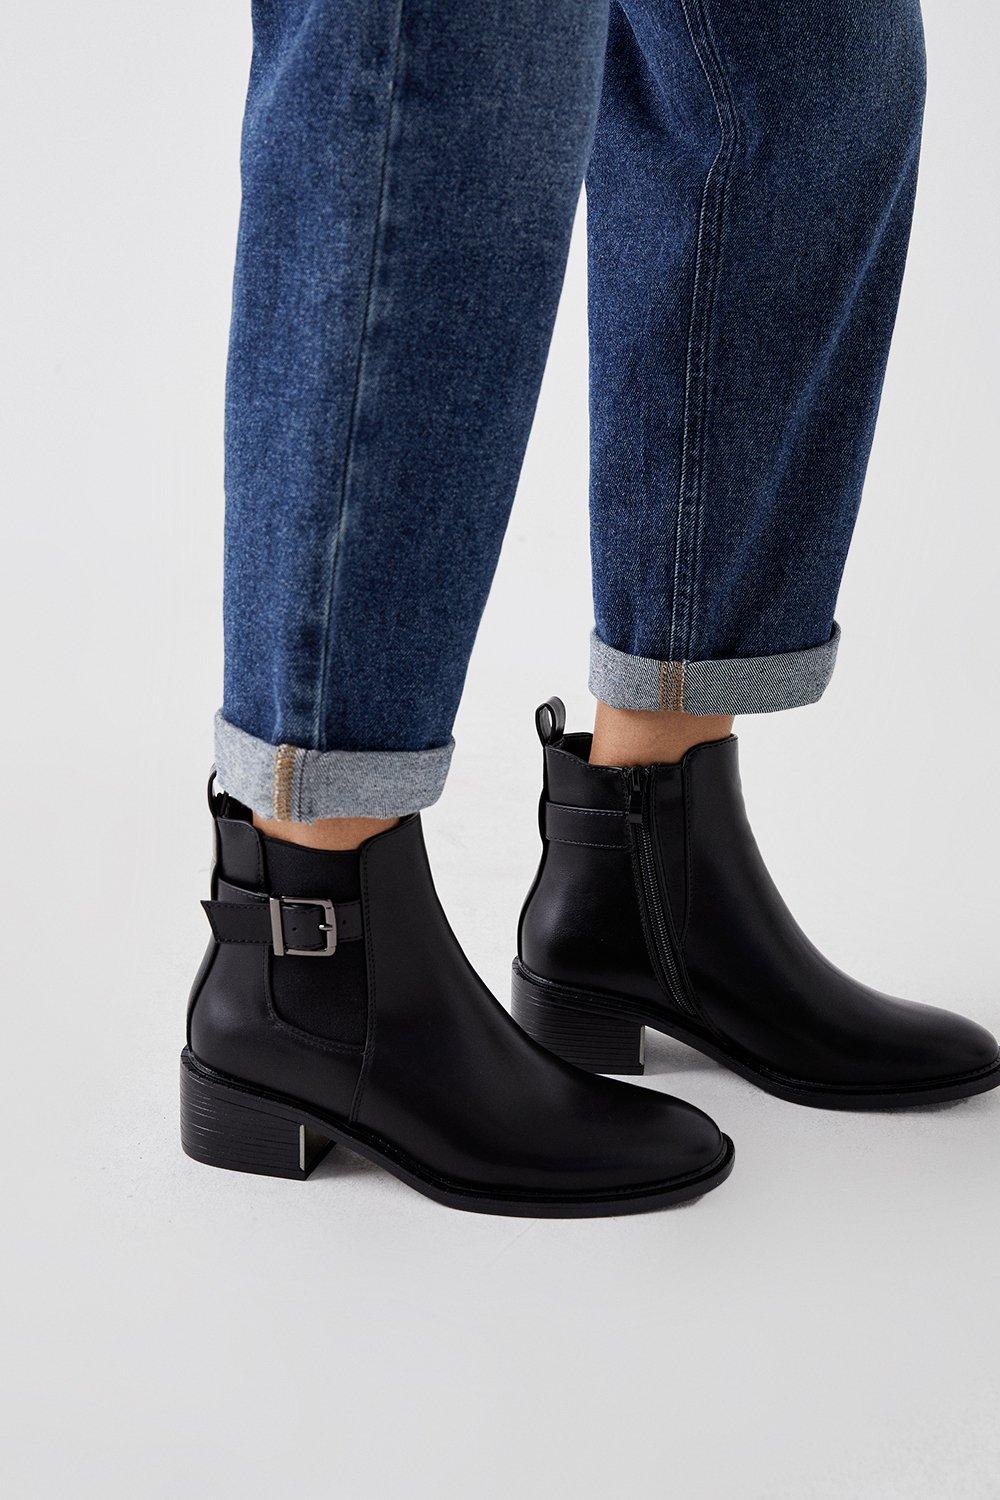 Women’s Faith: Andrea Buckle Trim Ankle Boots - black - 4